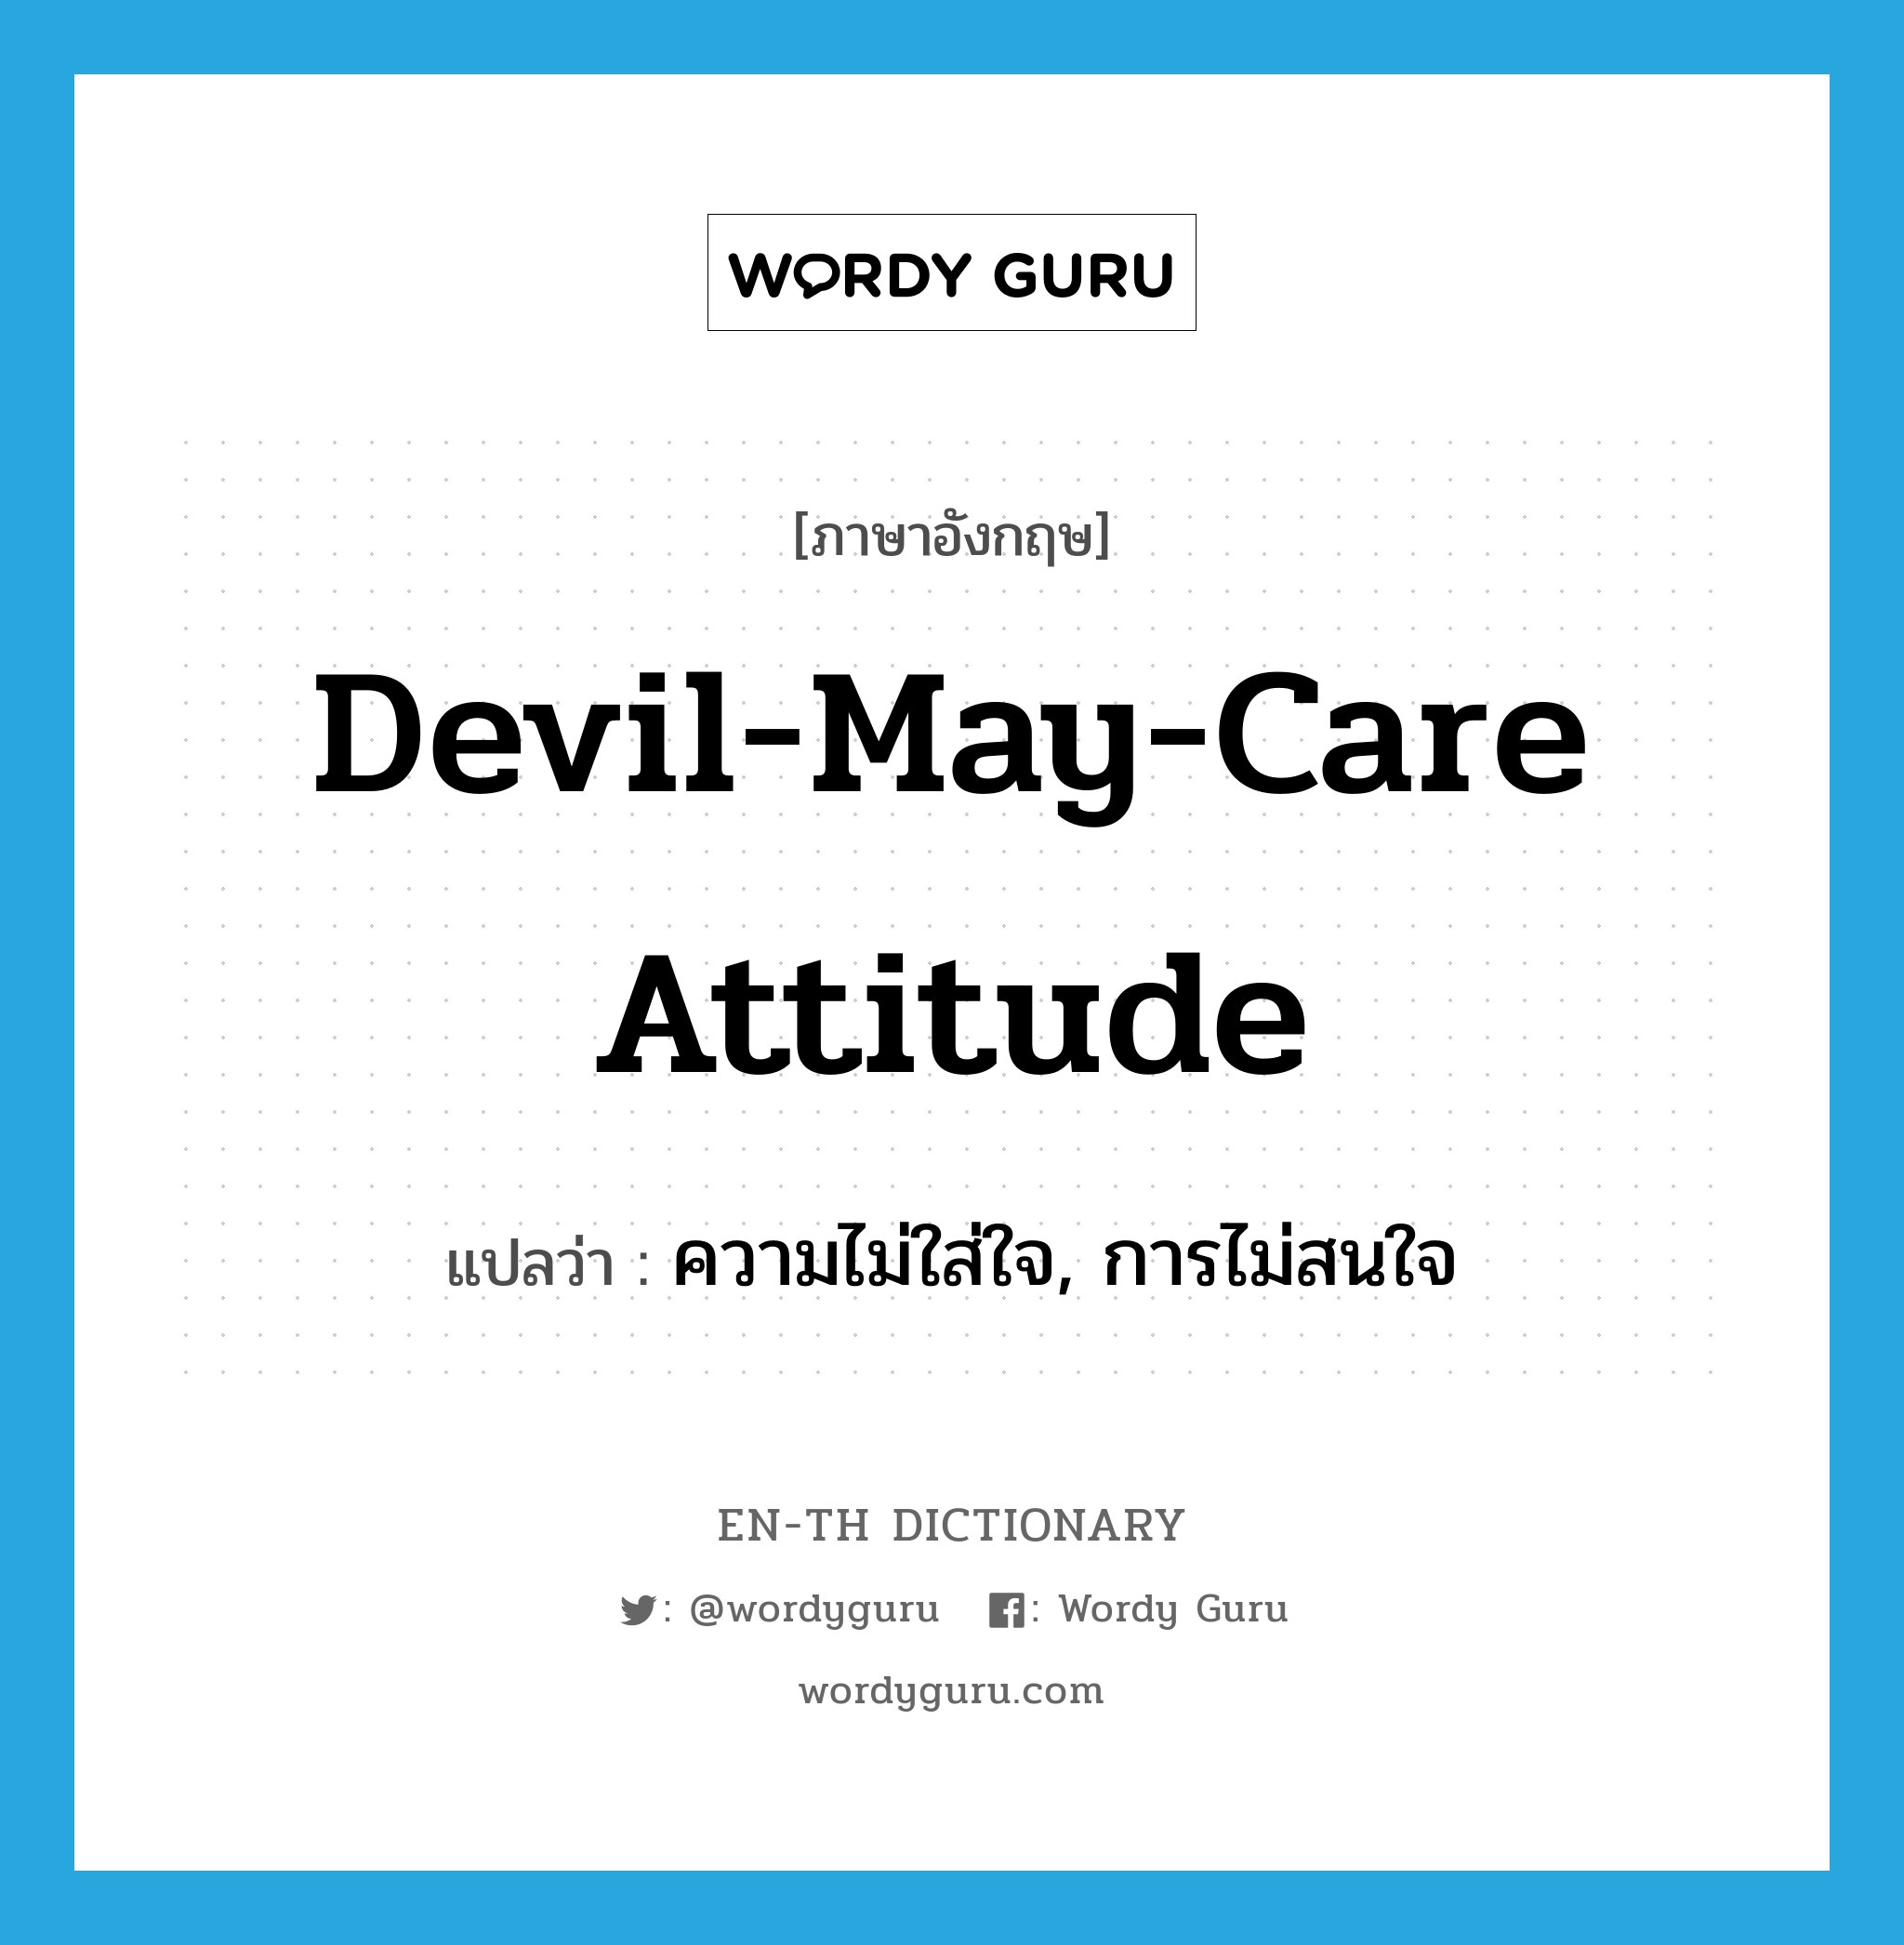 ความไม่ใส่ใจ, การไม่สนใจ ภาษาอังกฤษ?, คำศัพท์ภาษาอังกฤษ ความไม่ใส่ใจ, การไม่สนใจ แปลว่า devil-may-care attitude ประเภท IDM หมวด IDM